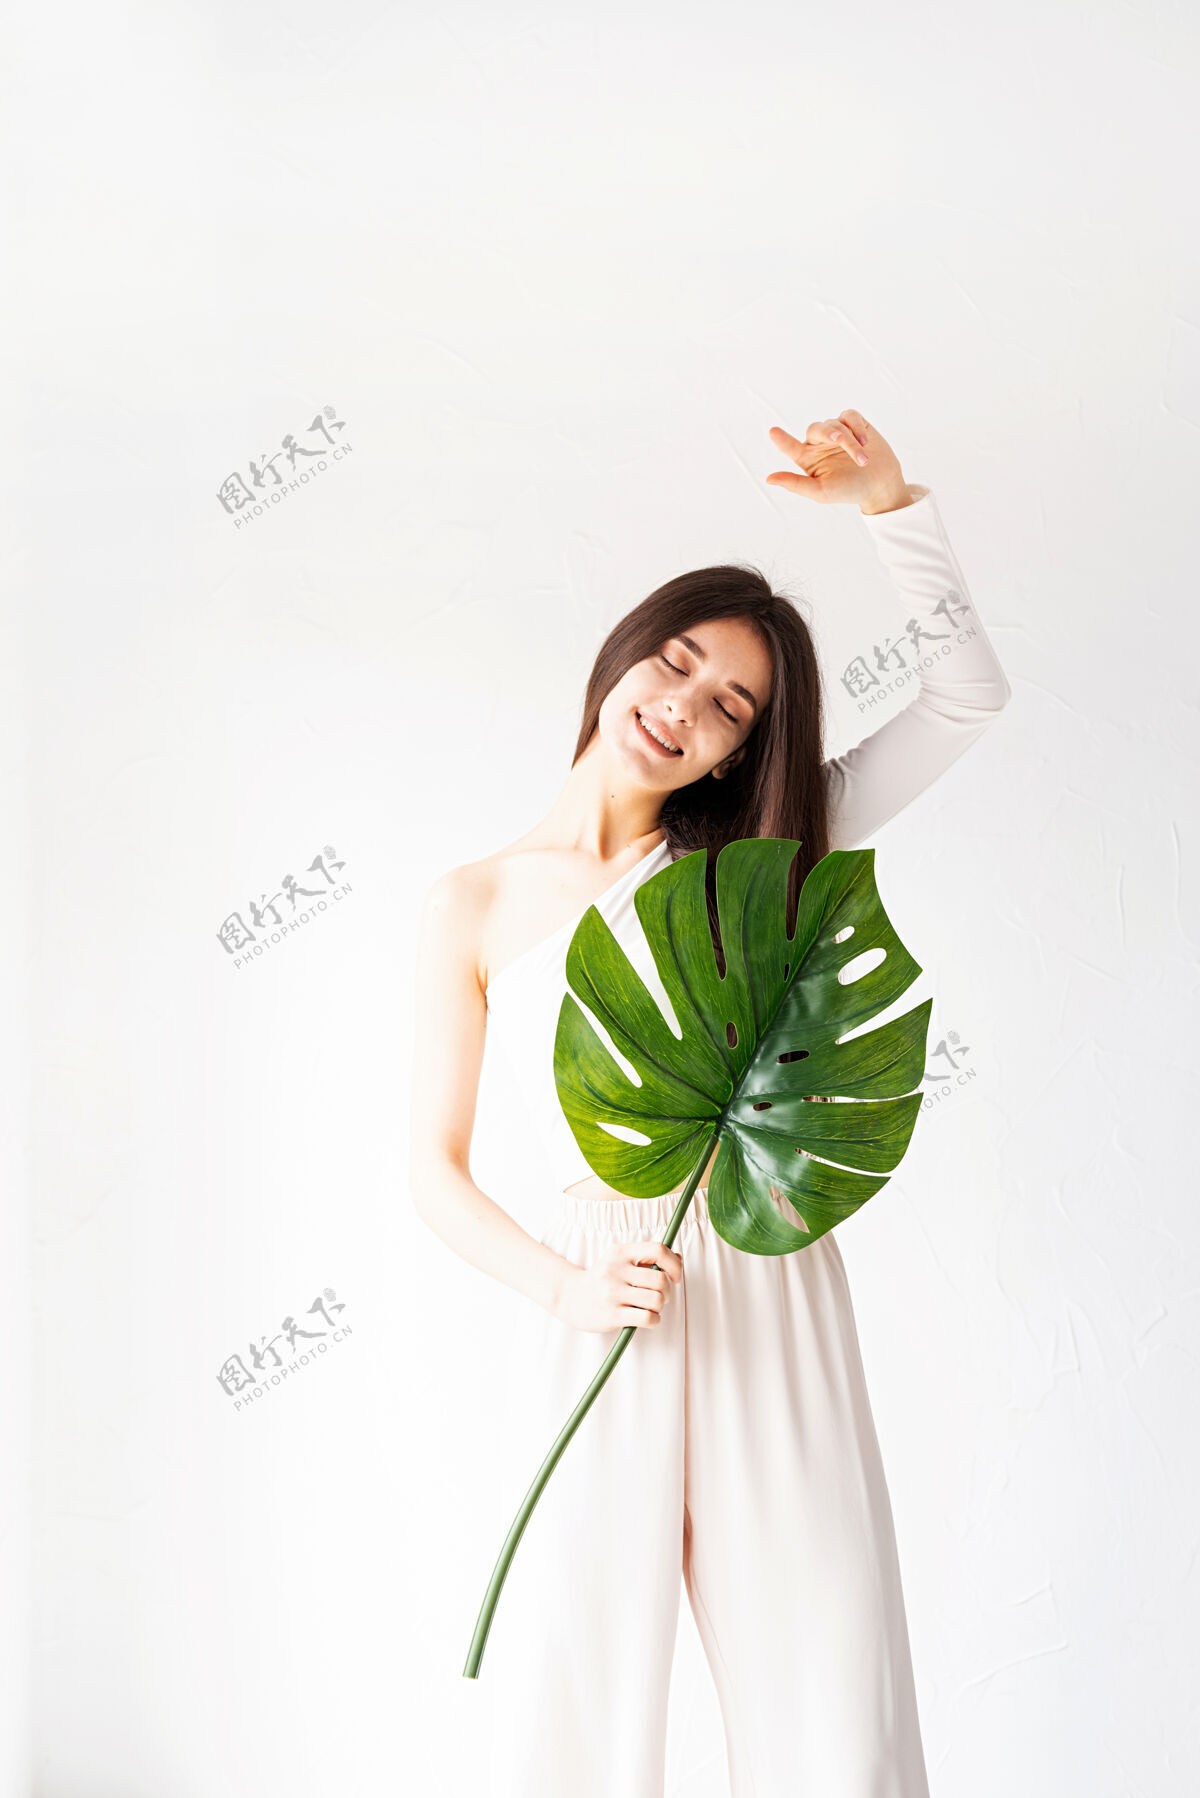 女人水疗和美容自我护理和皮肤护理一个穿着舒适衣服 手持绿叶的快乐美女沙龙治疗自我护理